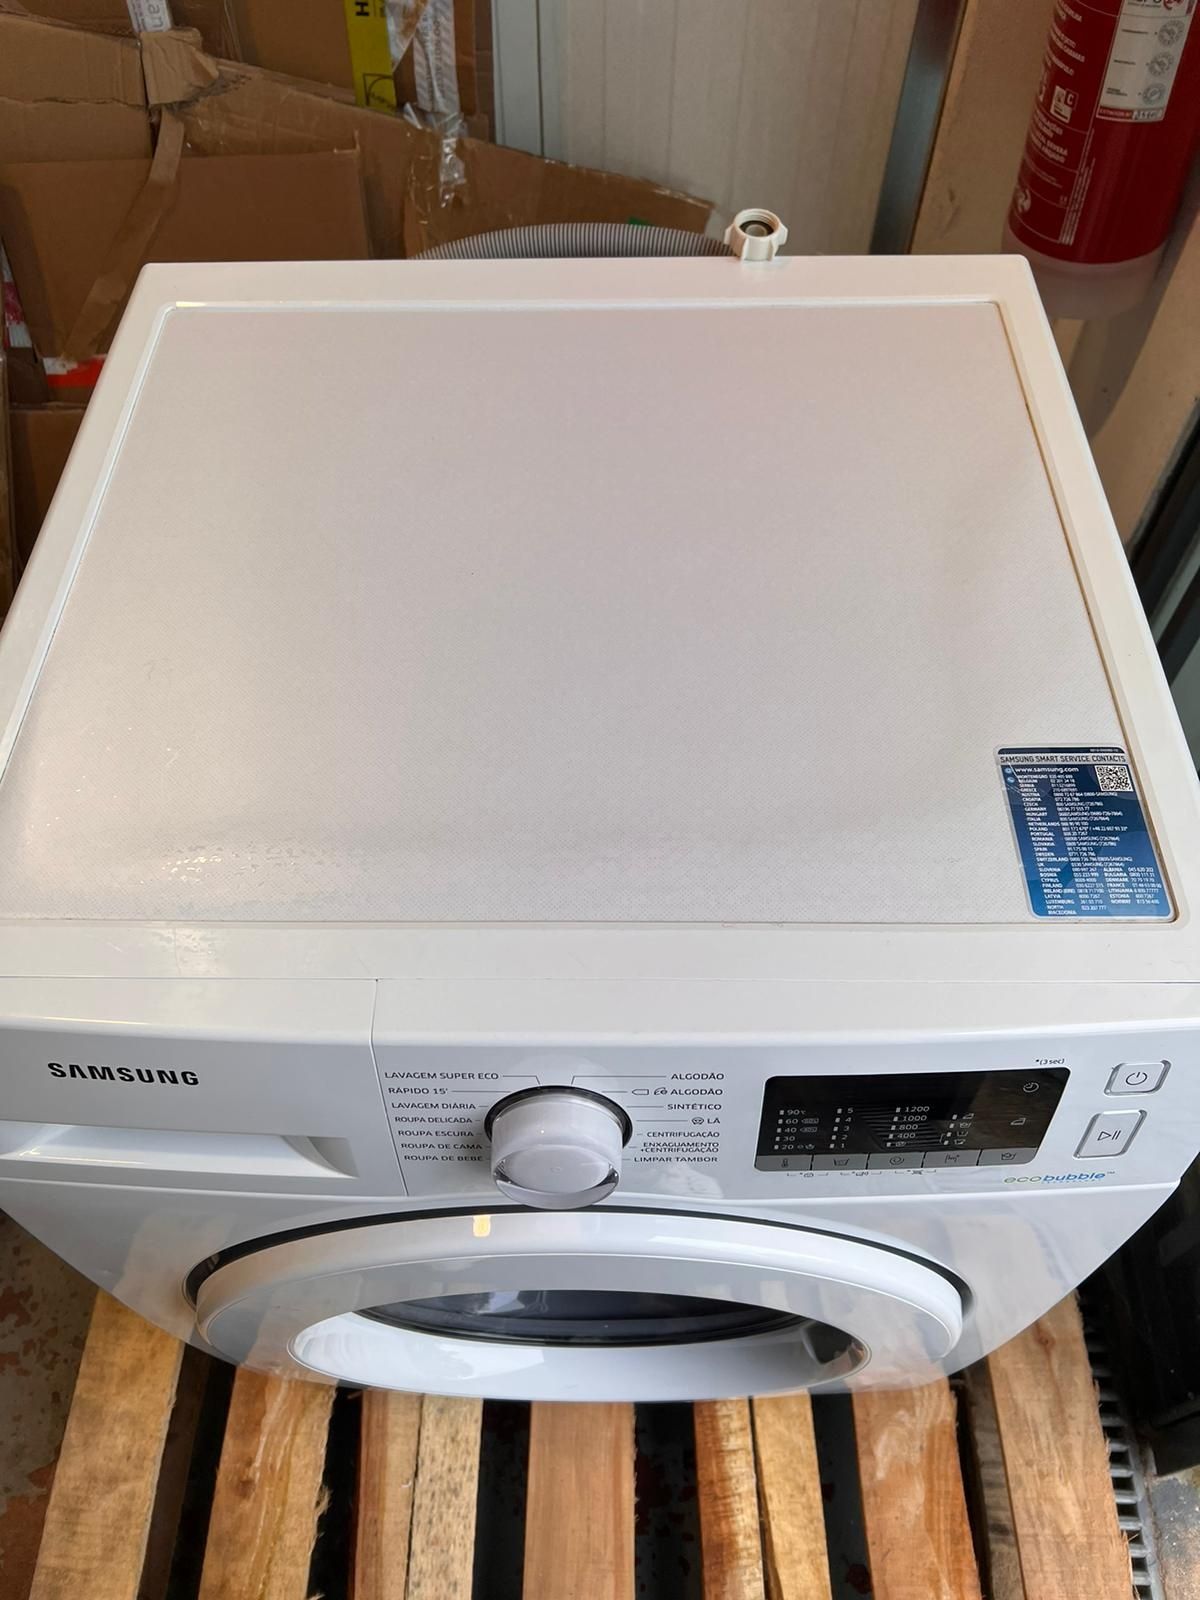 SAMSUNG WW80J5355MW/EP - máquina lavar roupa como nova